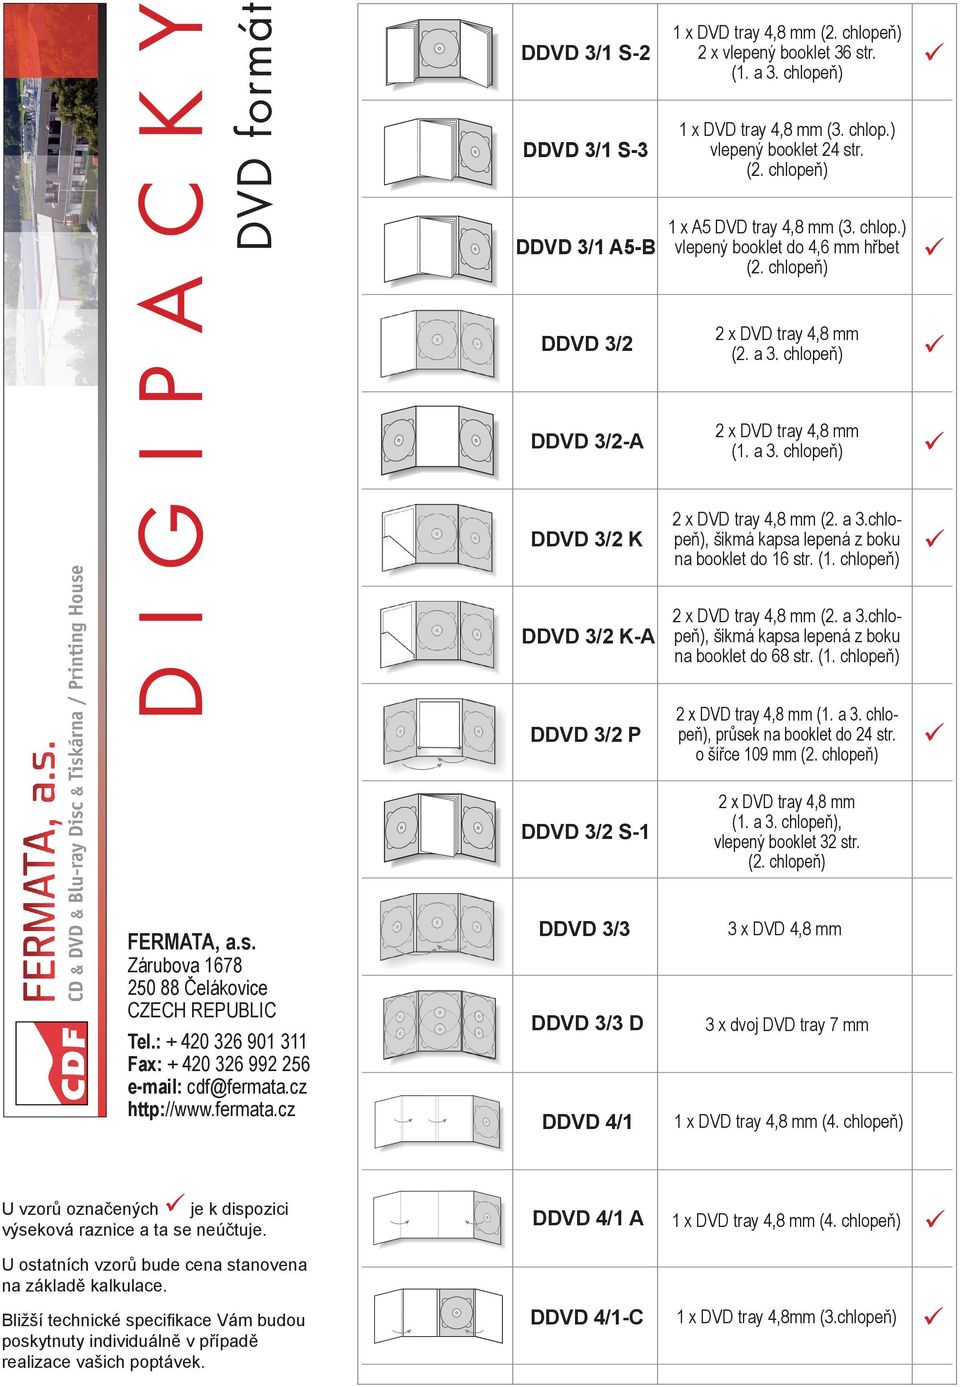 (2. a 3.chlo- DDVD 3/2 K-A peň), šikmá kapsa lepená z boku na booklet do 68 str. DDVD 3/2 P (1. a 3. chlopeň), průsek na booklet do 24 str. o šířce 10 mm DDVD 3/2 S-1 (1. a 3. chlopeň), vlepený booklet 32 str.